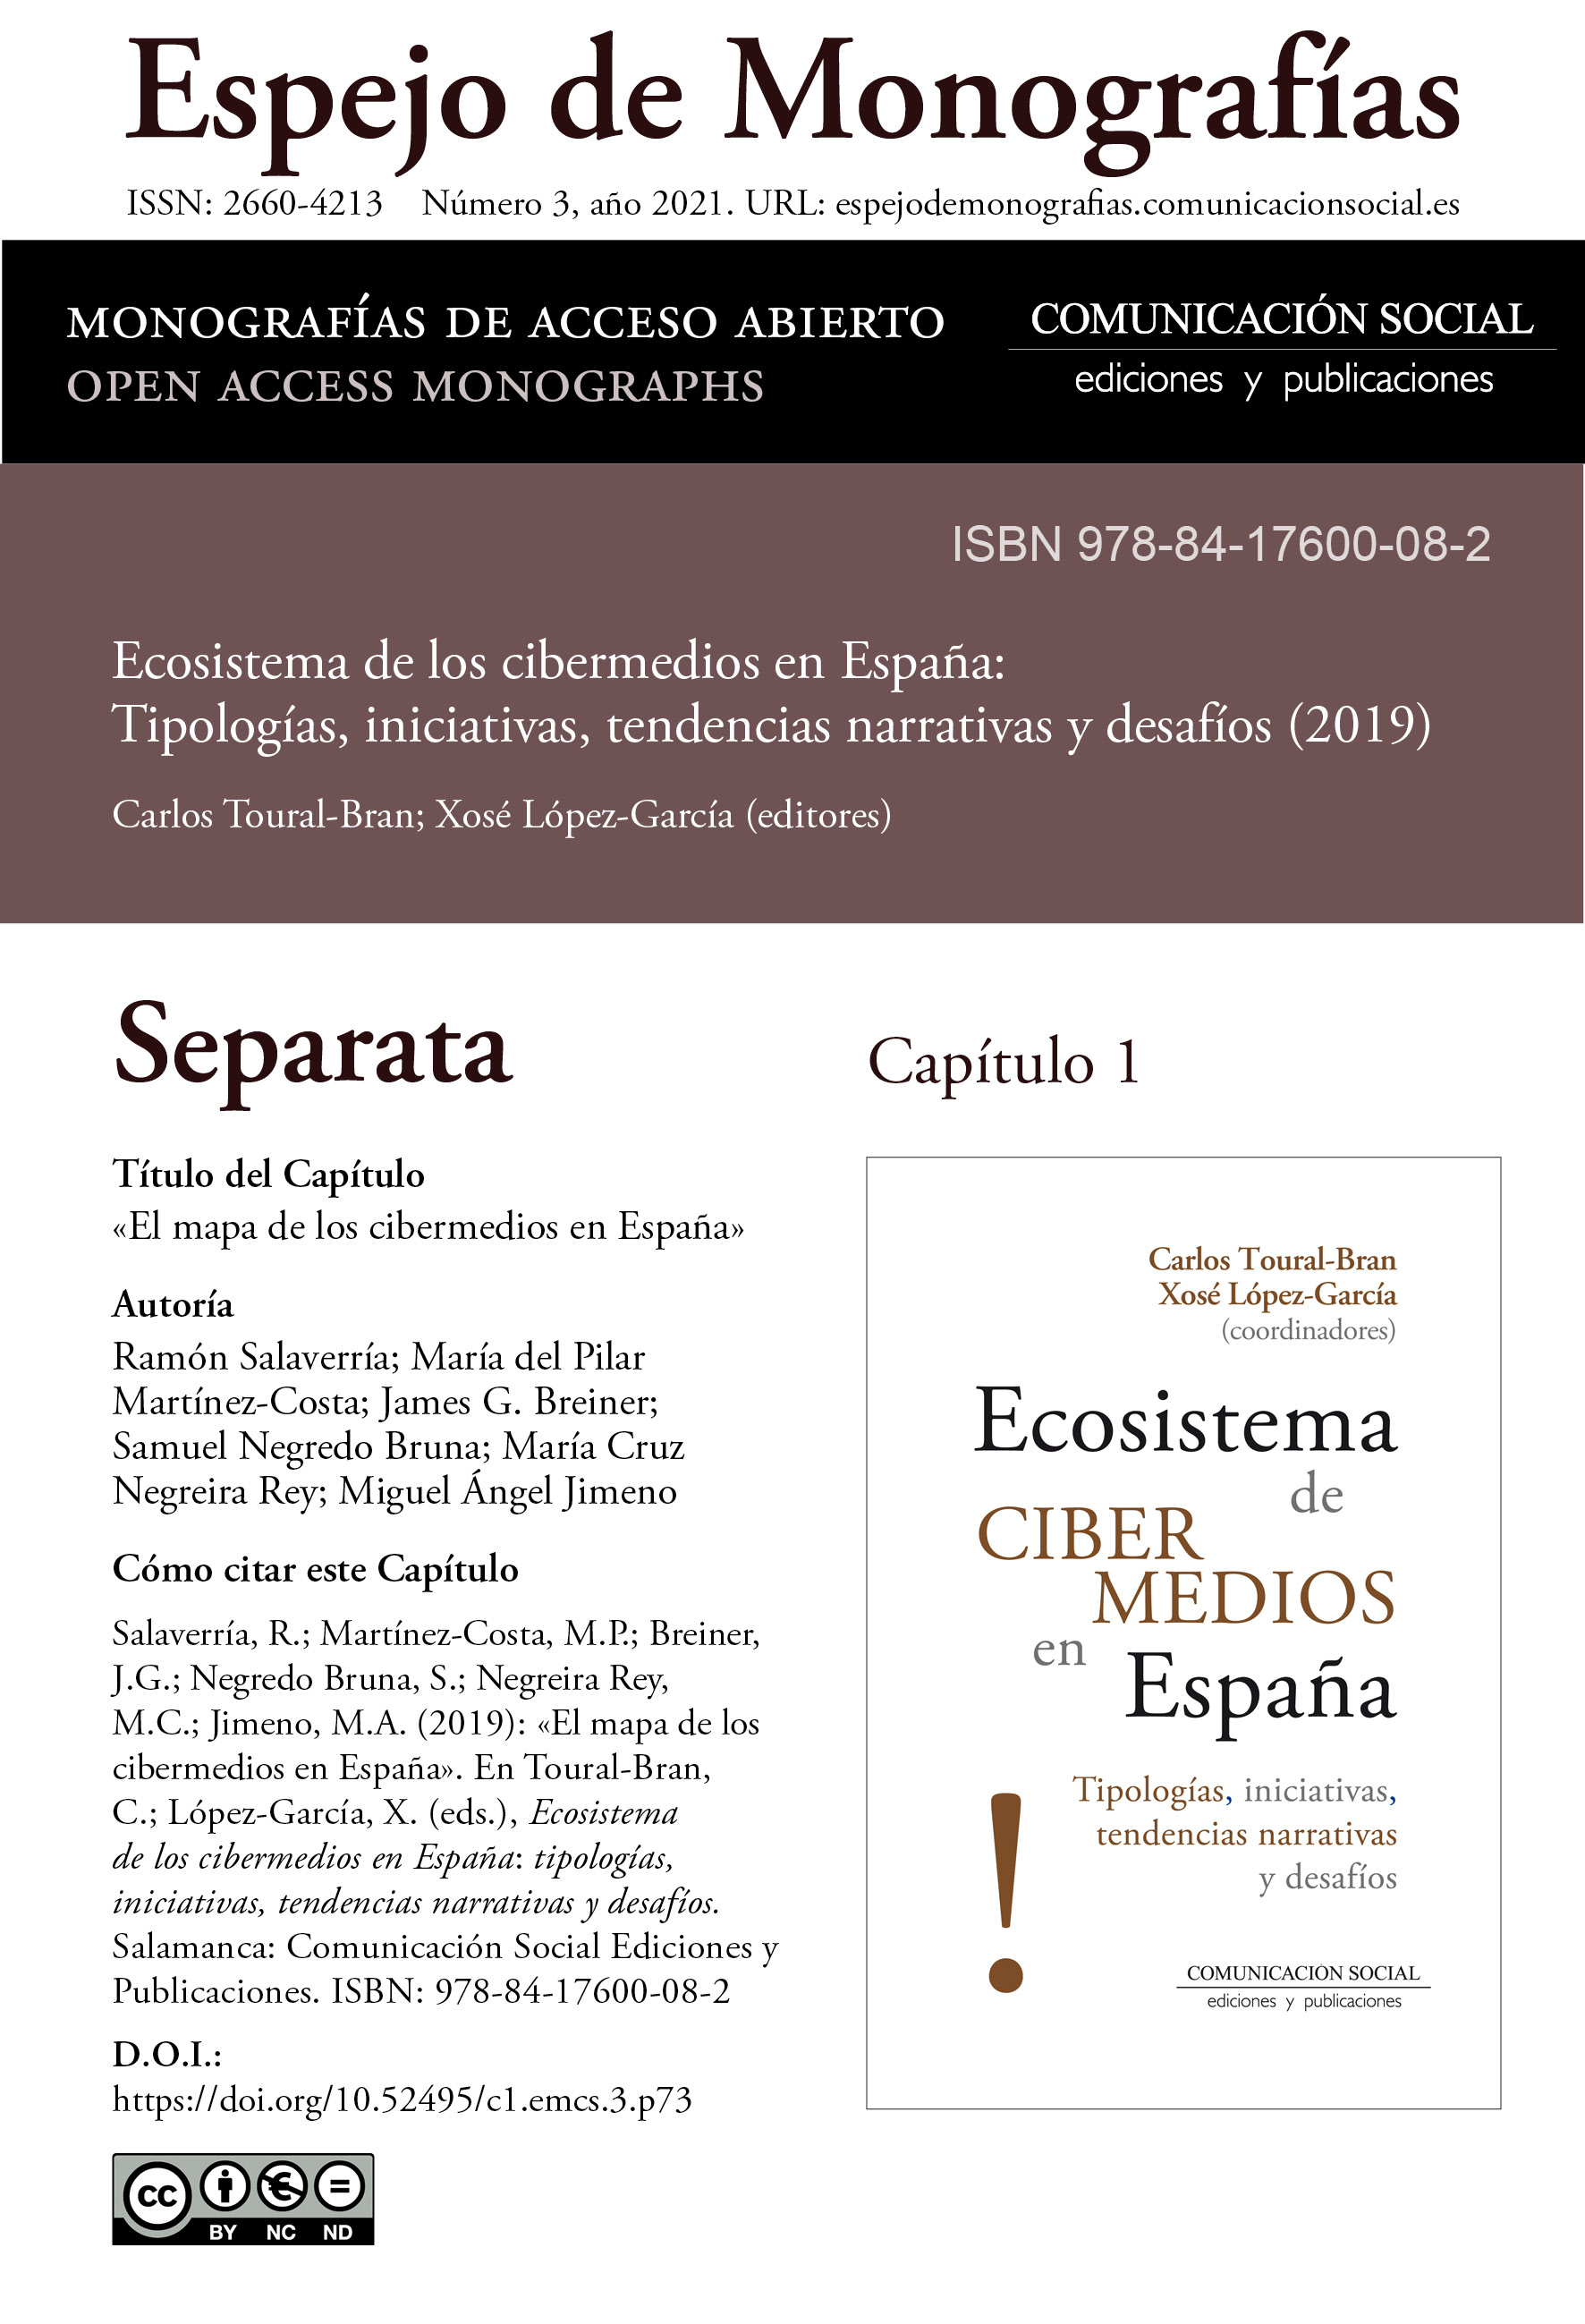 Separata del Capítulo 1 correspondiente a la monografía Ecosistema de cibermedios en España